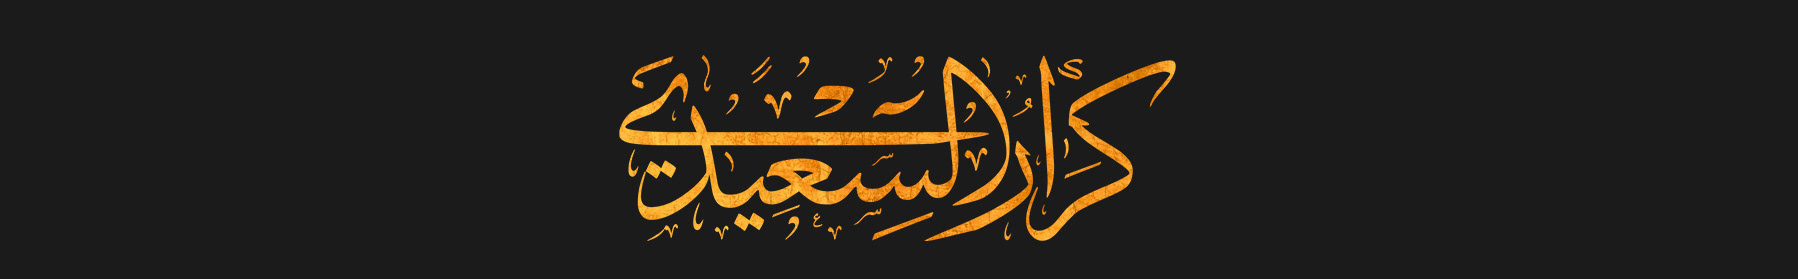 karrar alsaidi كرار السعيدي's profile banner